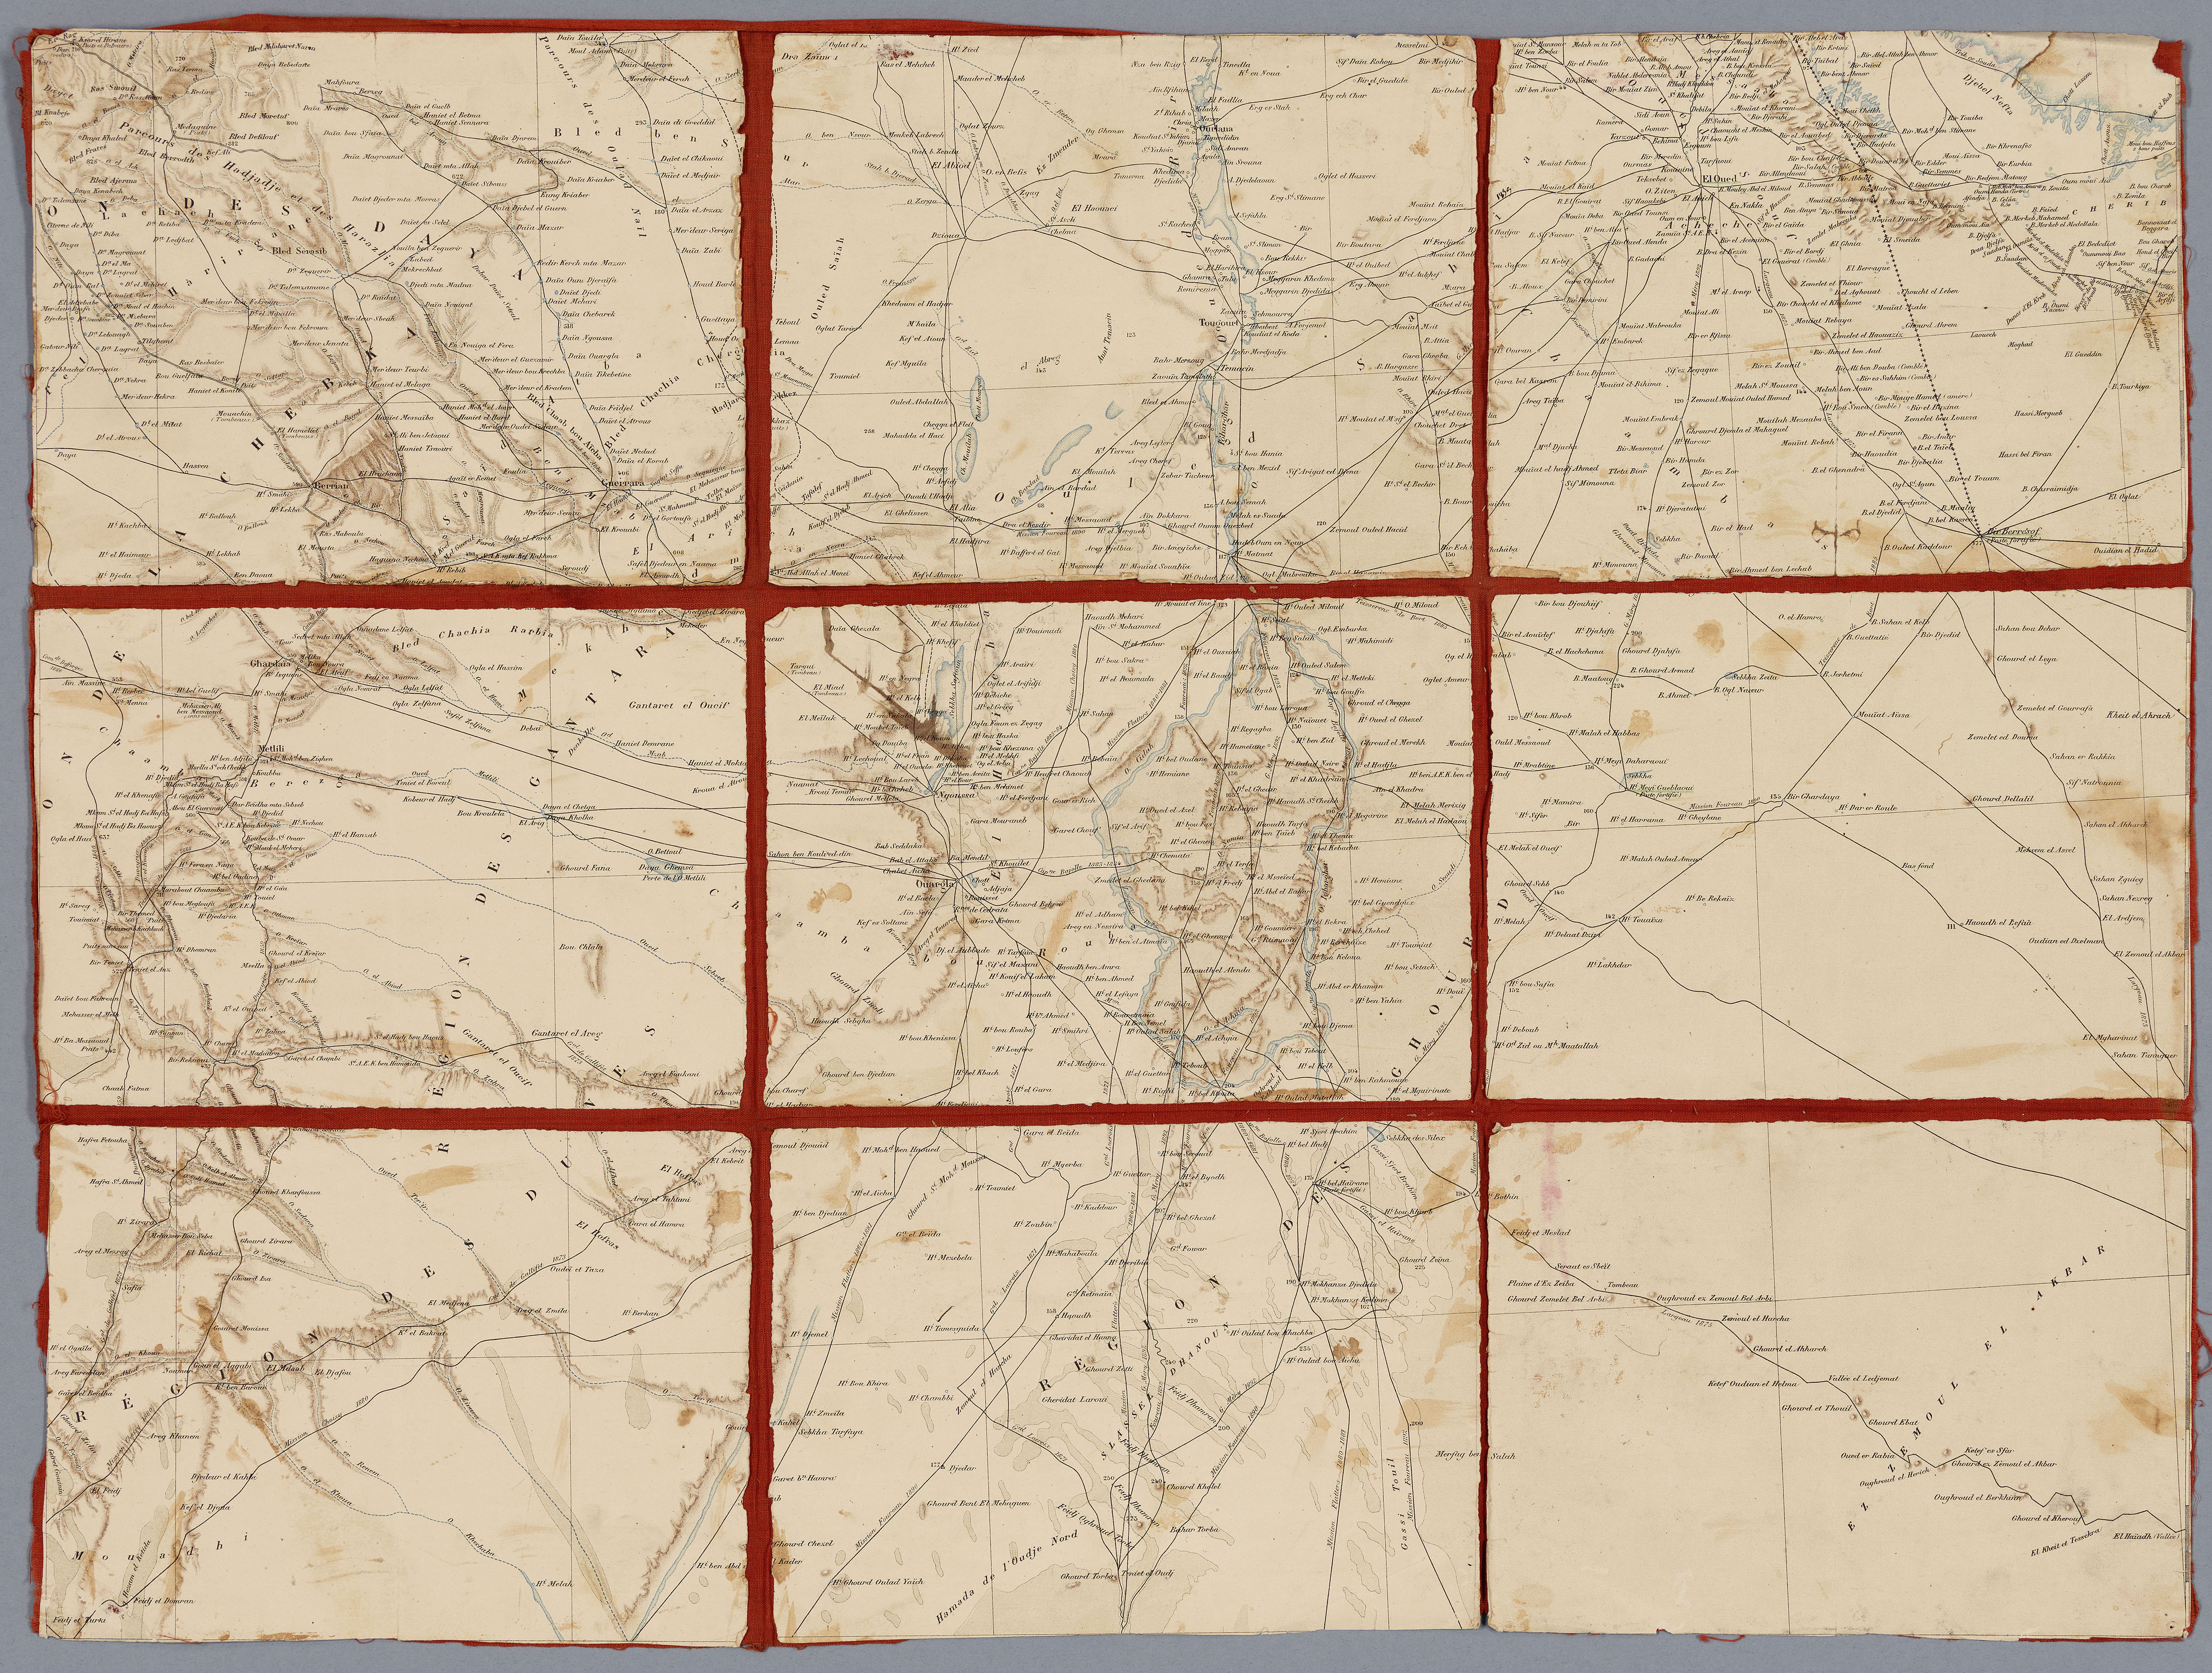 Carte des environs de Ouargla dans les Territoires du Sud*, en Algérie, ayant appartenu à Isabelle Eberhardt 